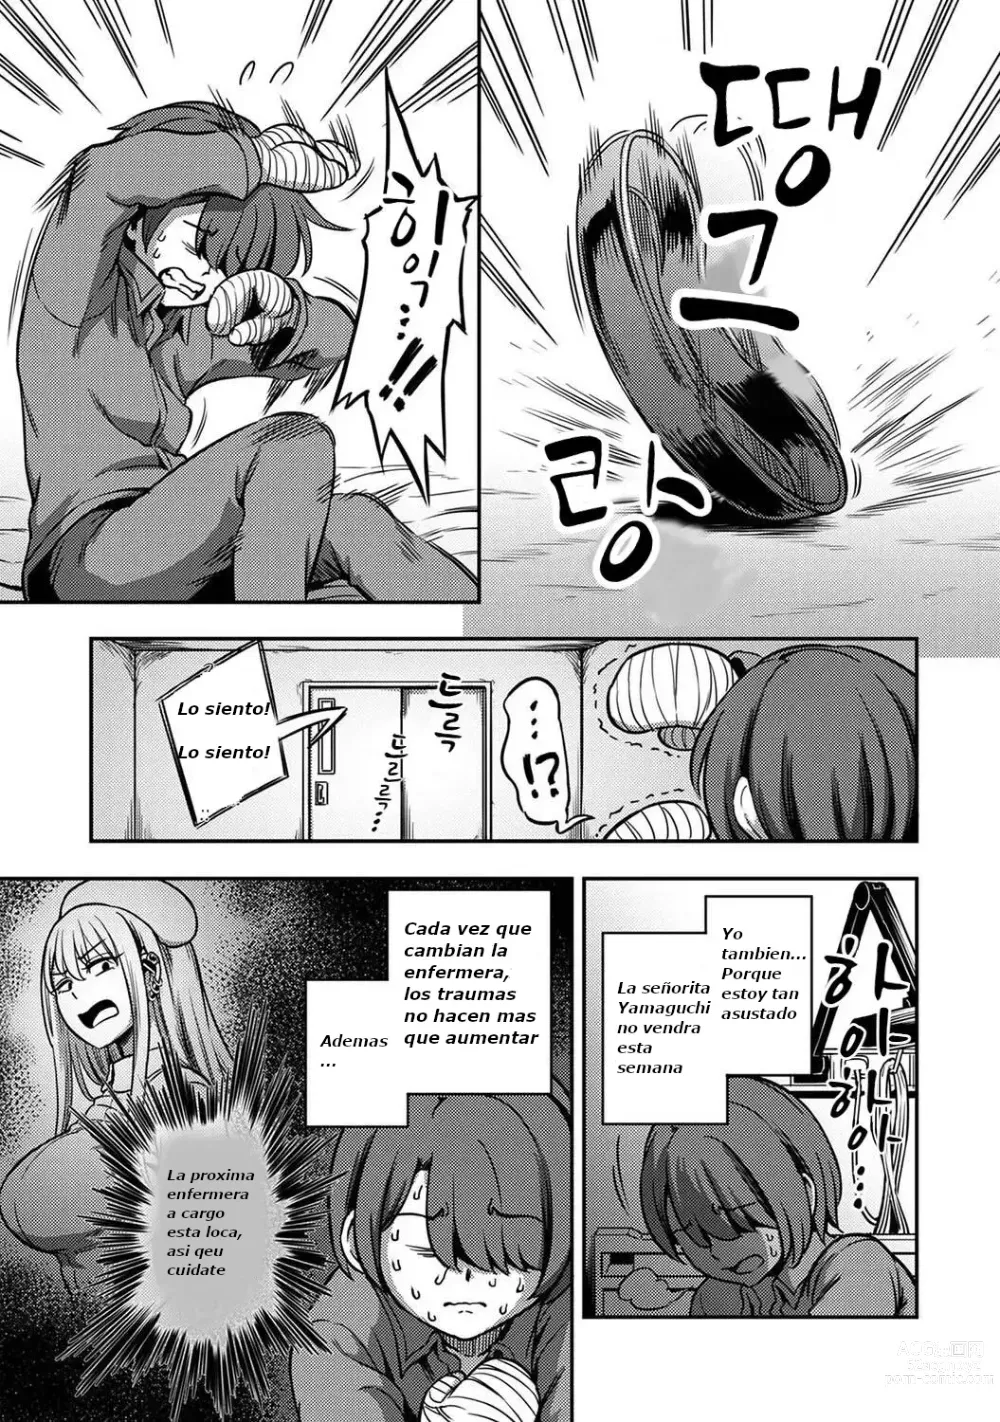 Page 2 of manga 